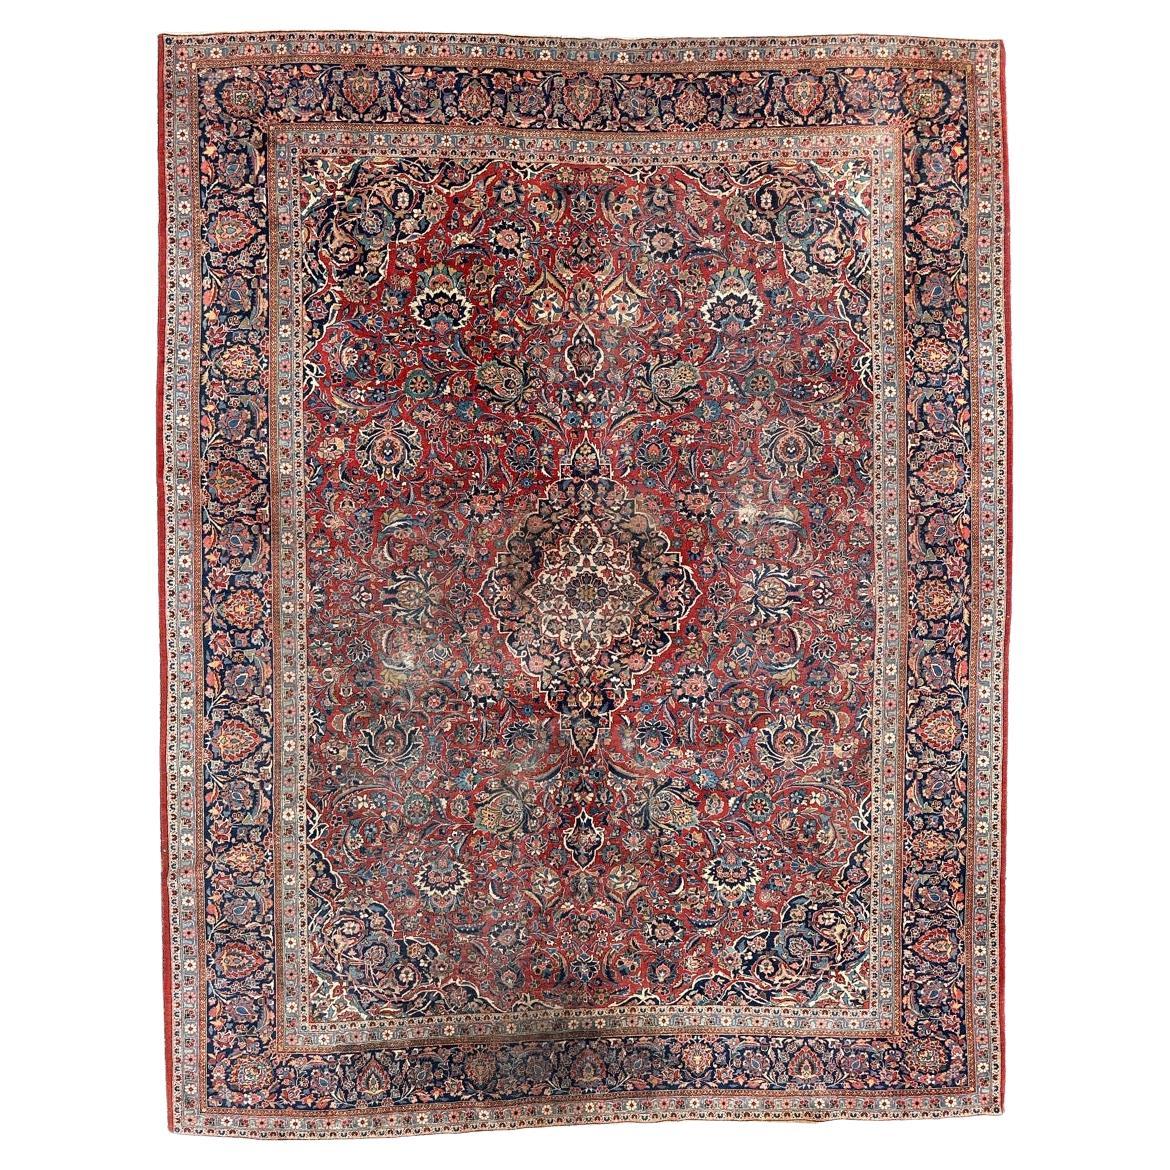 Bobyrug’s Nice antique large kashan rug 